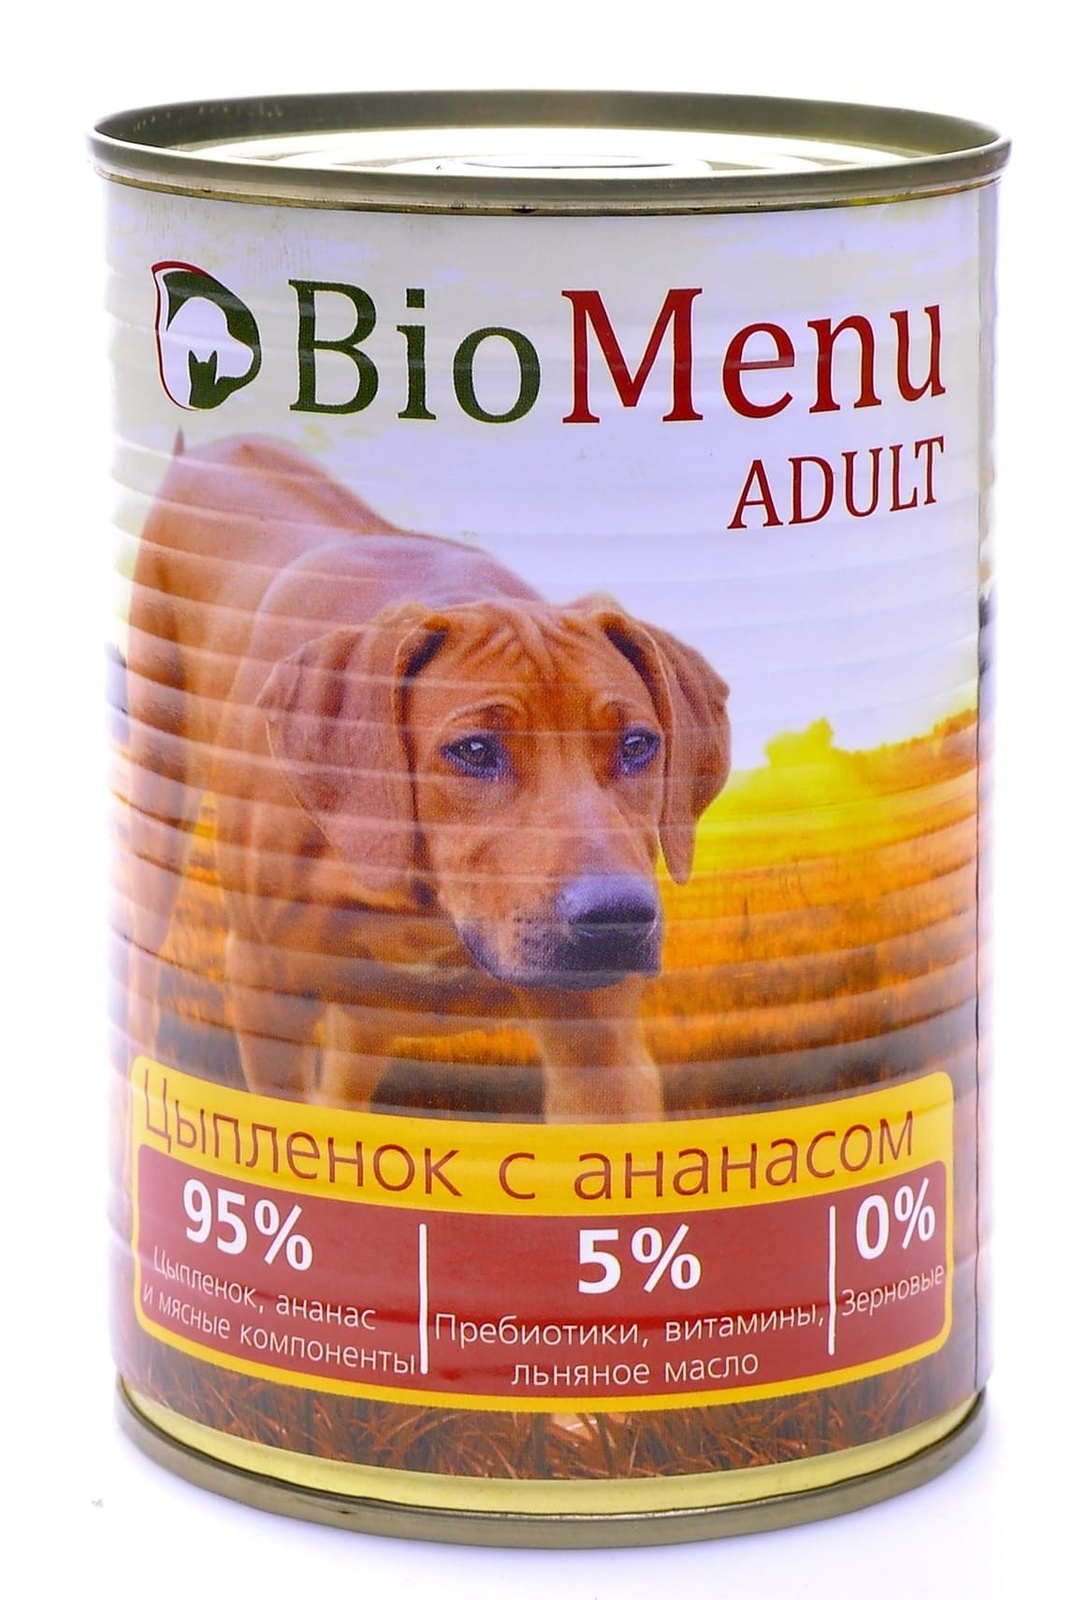 BioMenu BioMenu консервы для собак цыпленок с ананасом (100 г) biomenu biomenu консервы для собак с говядиной 100 г